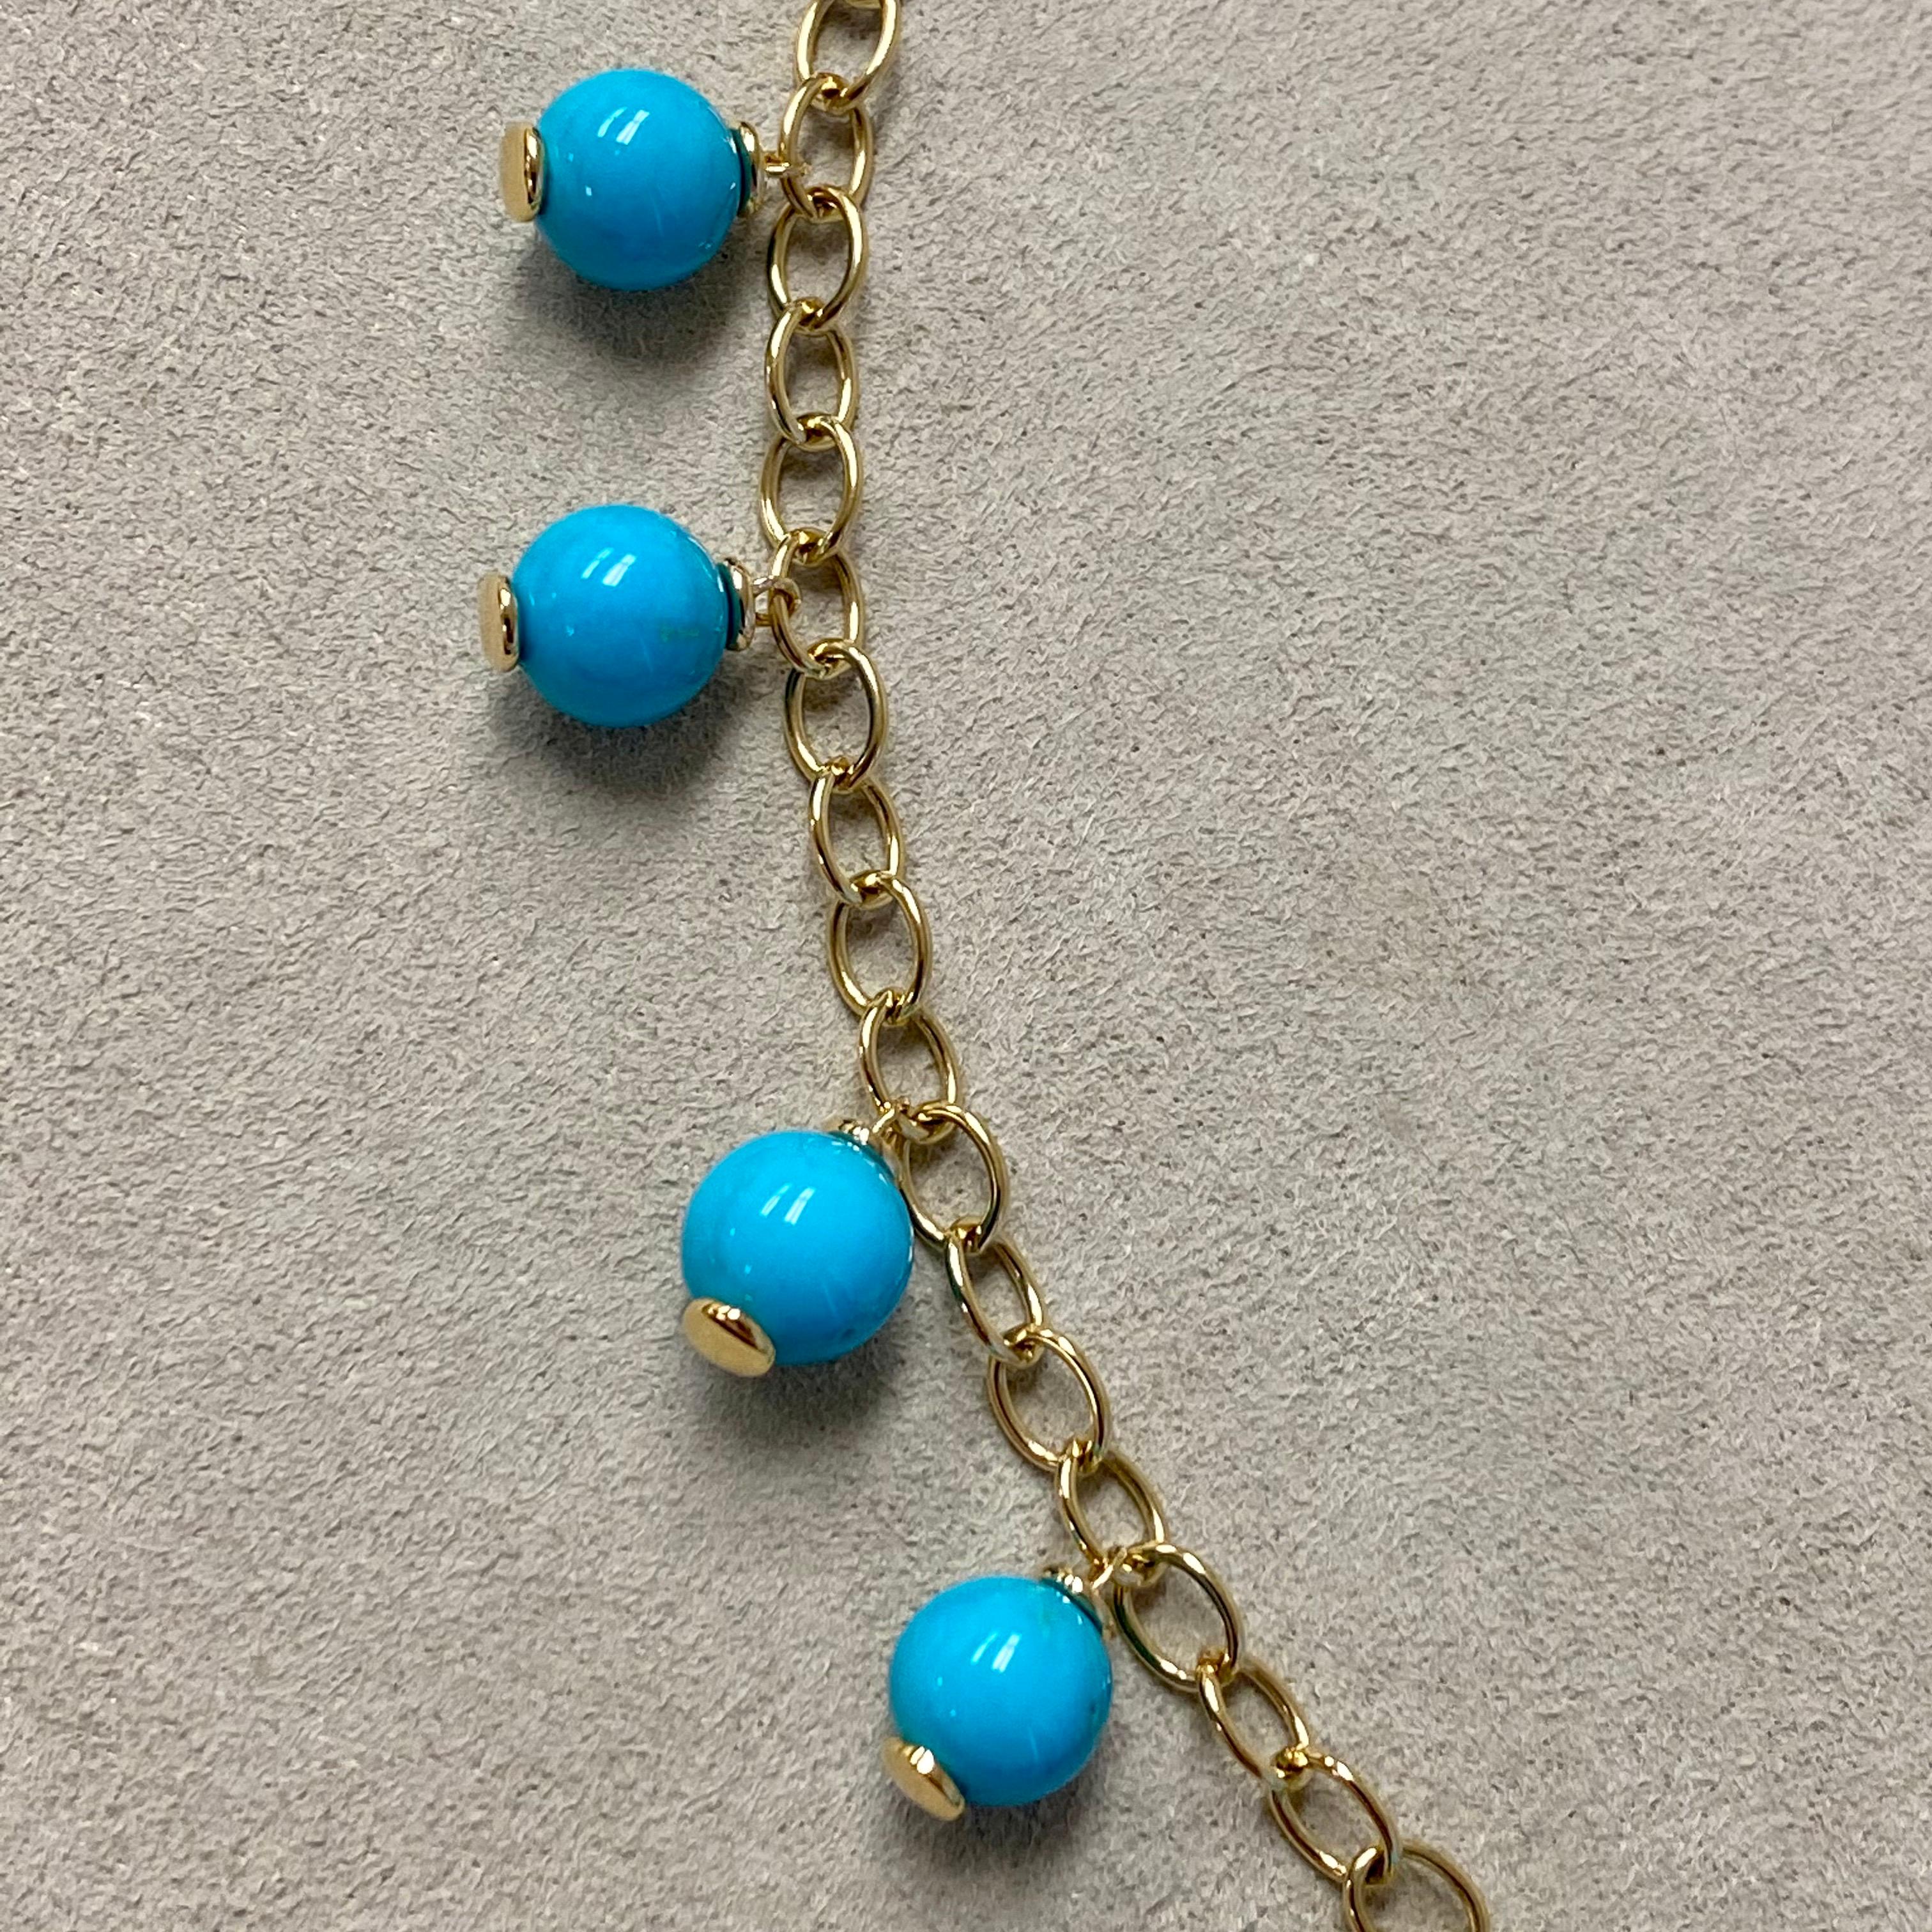 sleeping beauty turquoise beads